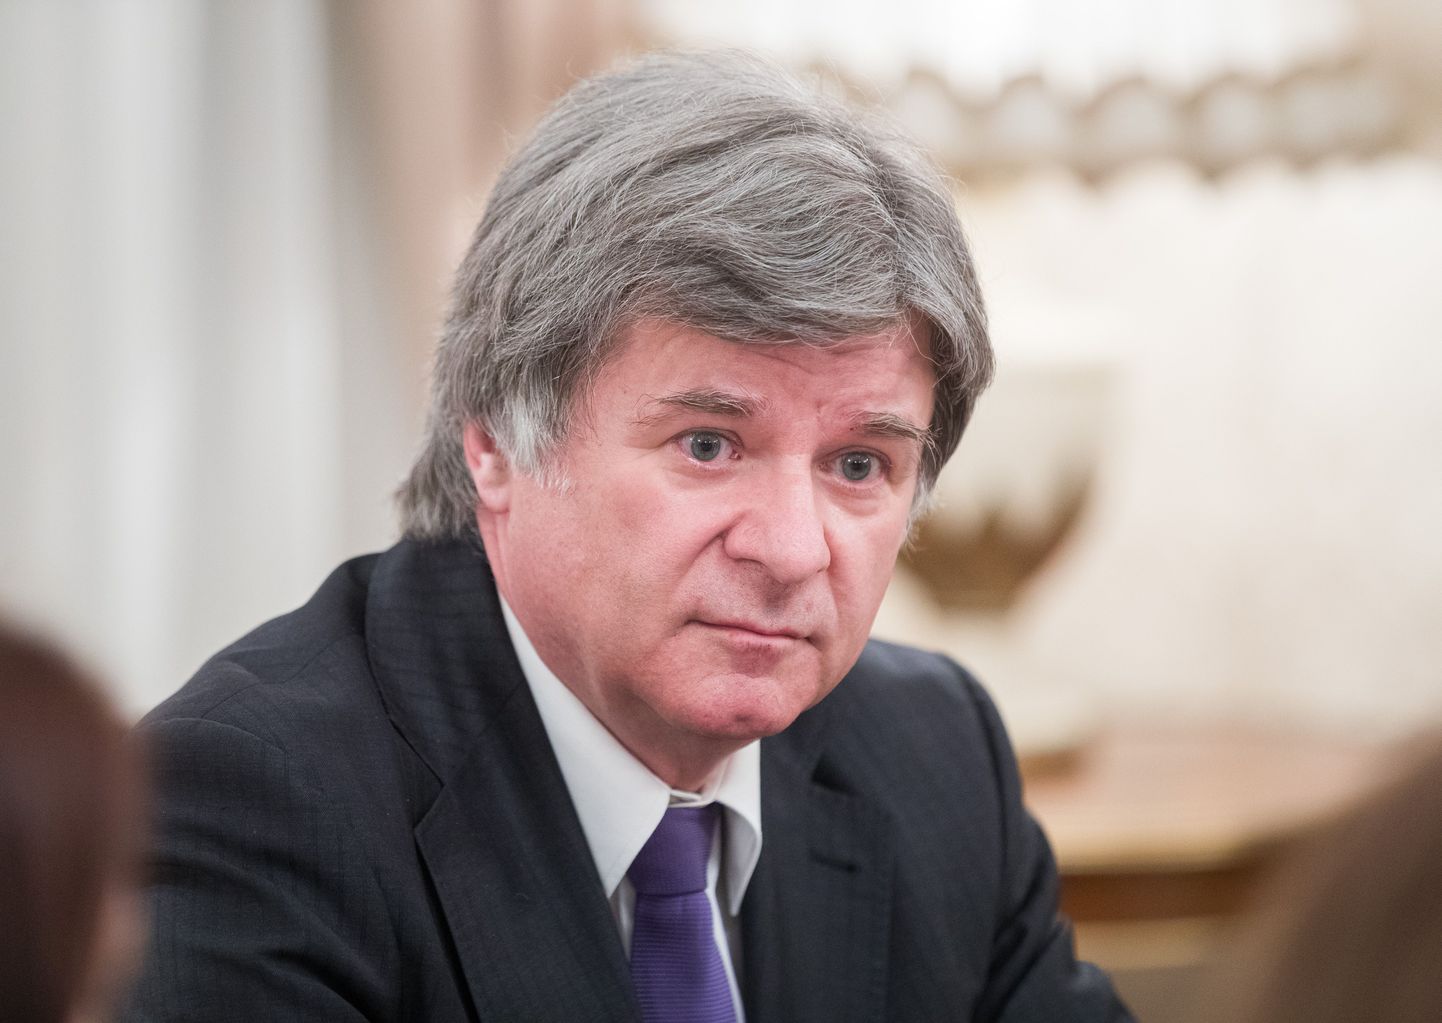 Venemaa suursaadik Aleksandr Petrovi pressikonverents